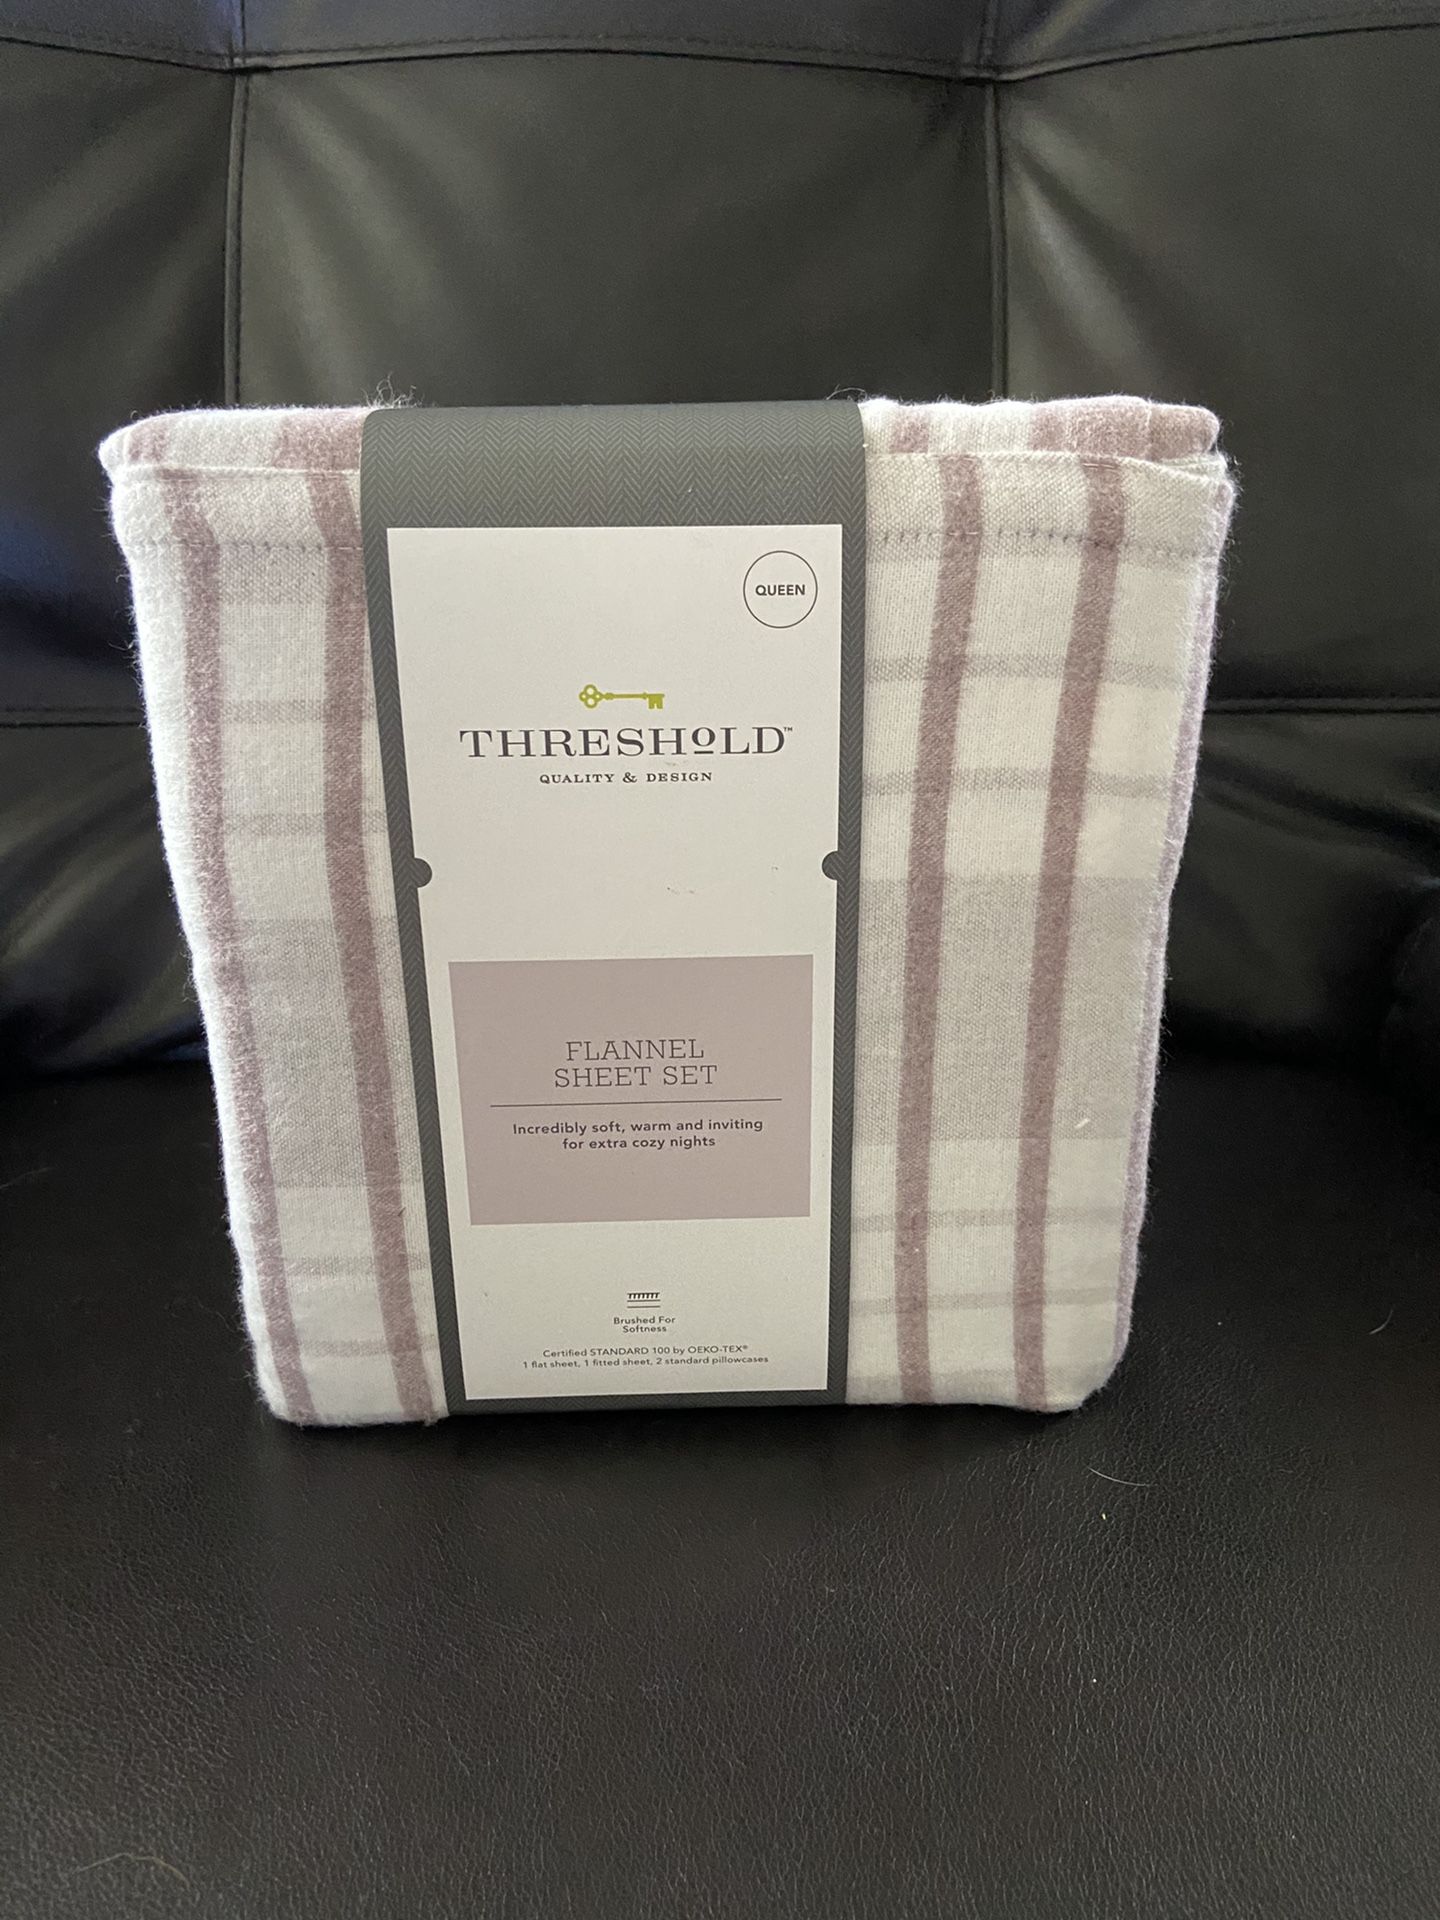 Threshold flannel queen sheet set